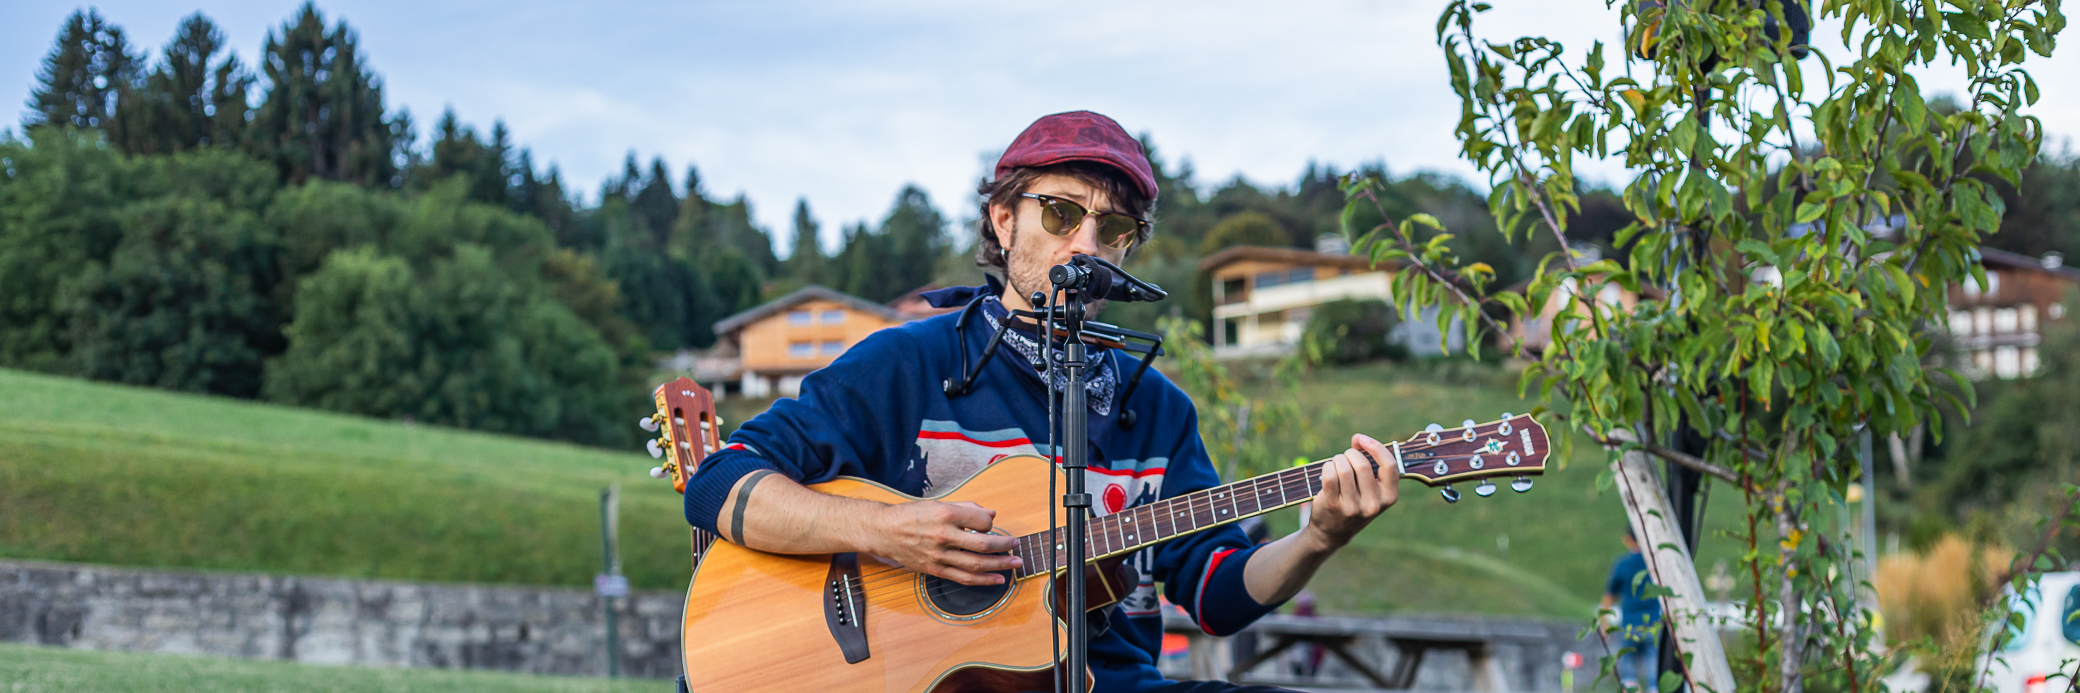 PiER, musicien Chanteur en représentation à Savoie - photo de couverture n° 2